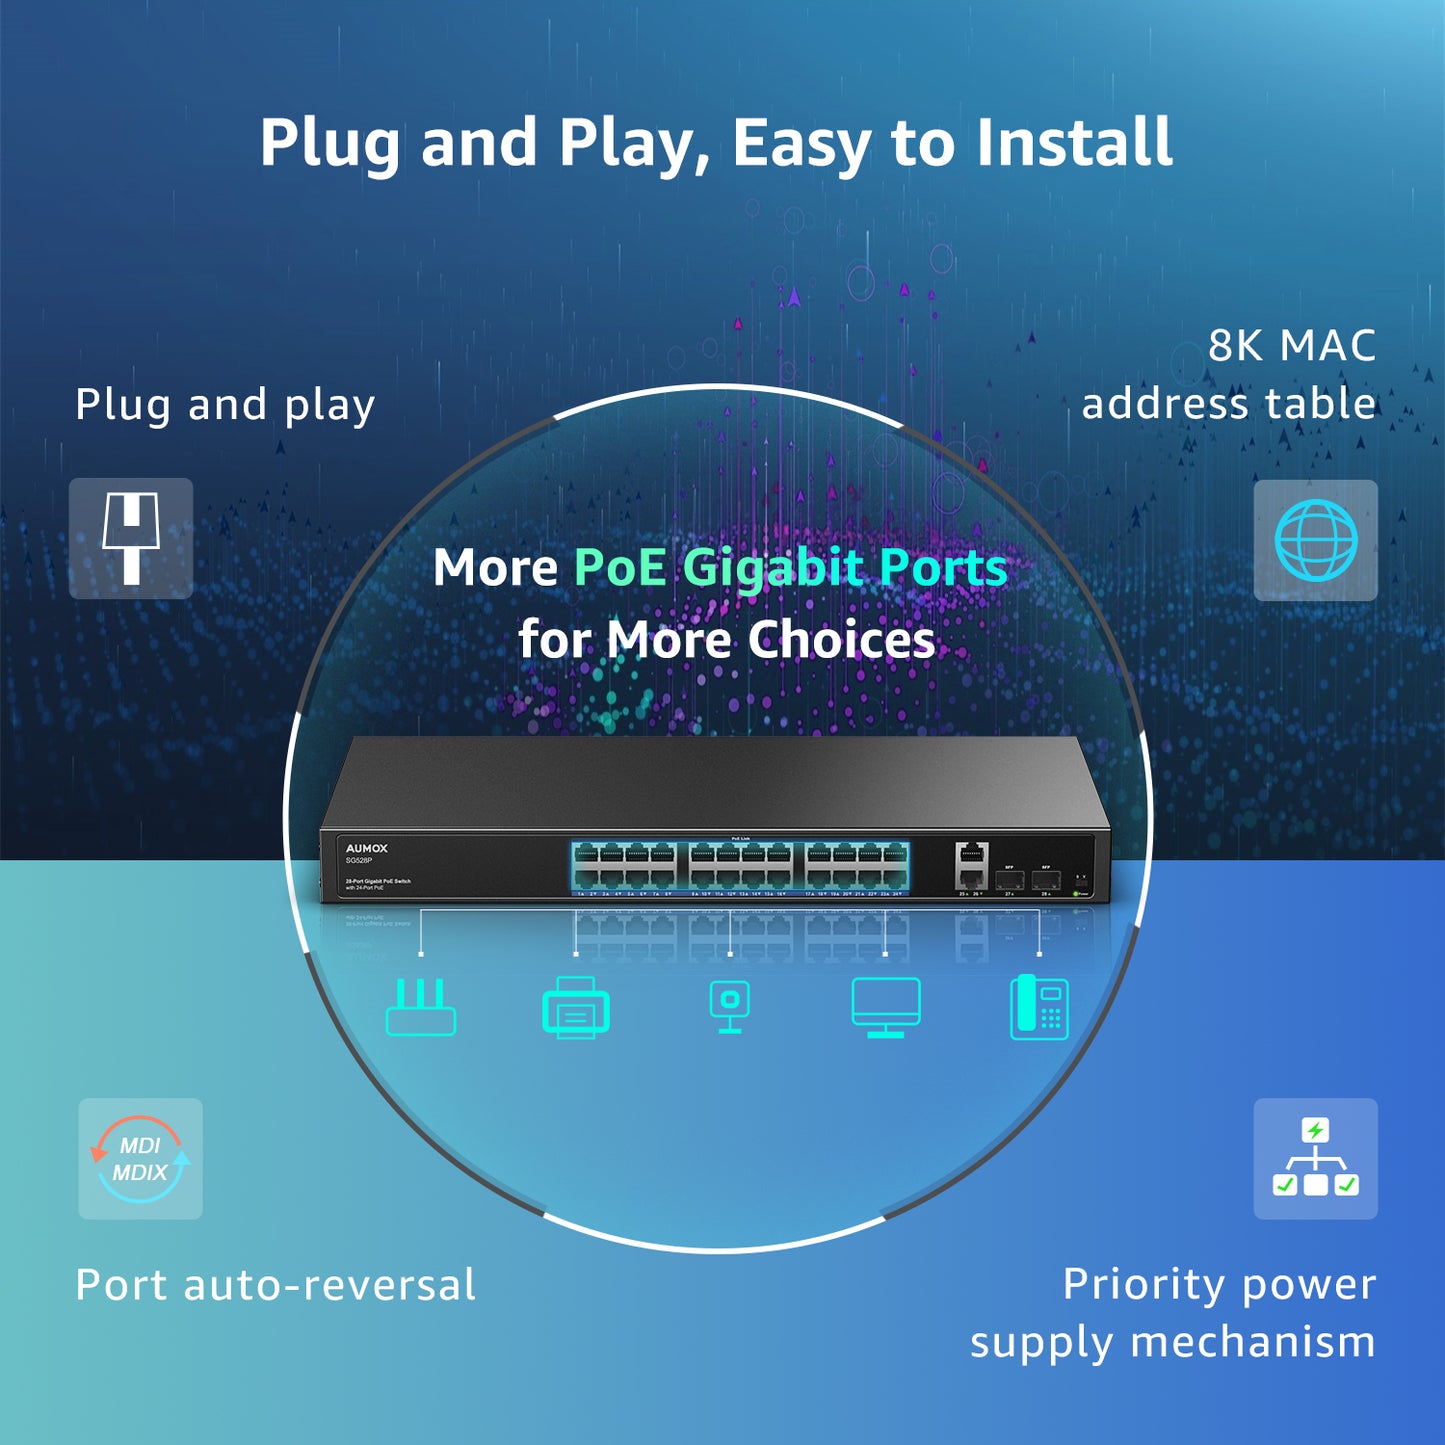 Commutateur PoE Gigabit AUMOX 28 ports 400 W, avec PoE 24 ports et 2 ports de liaison montante (SG528P)